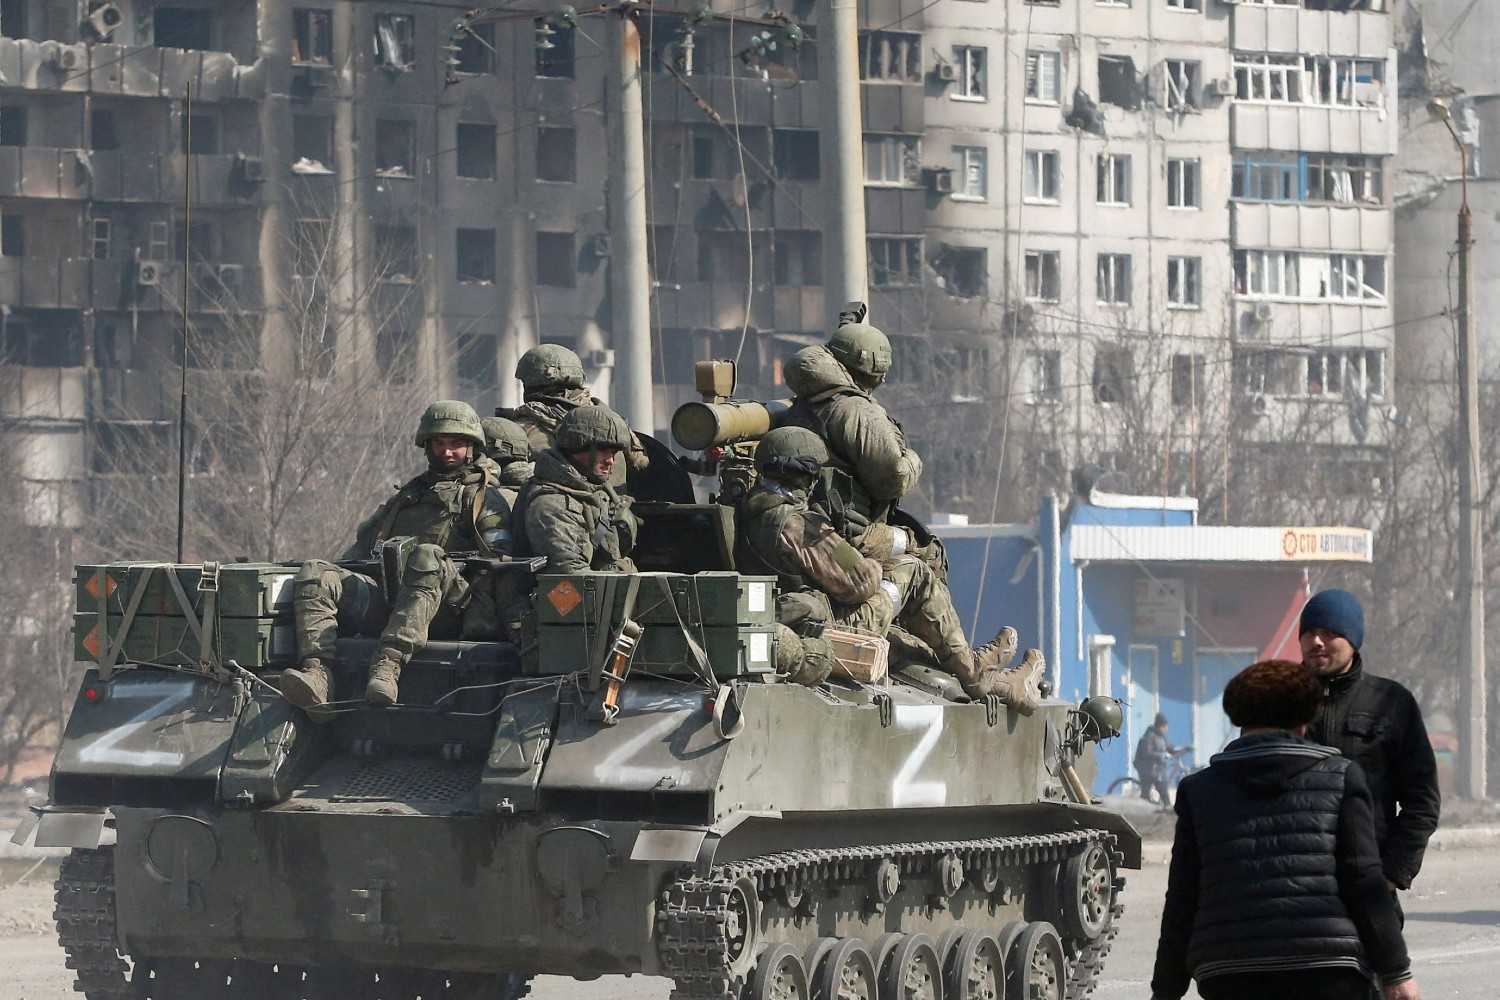 Фото в поддержку российских военных на украине